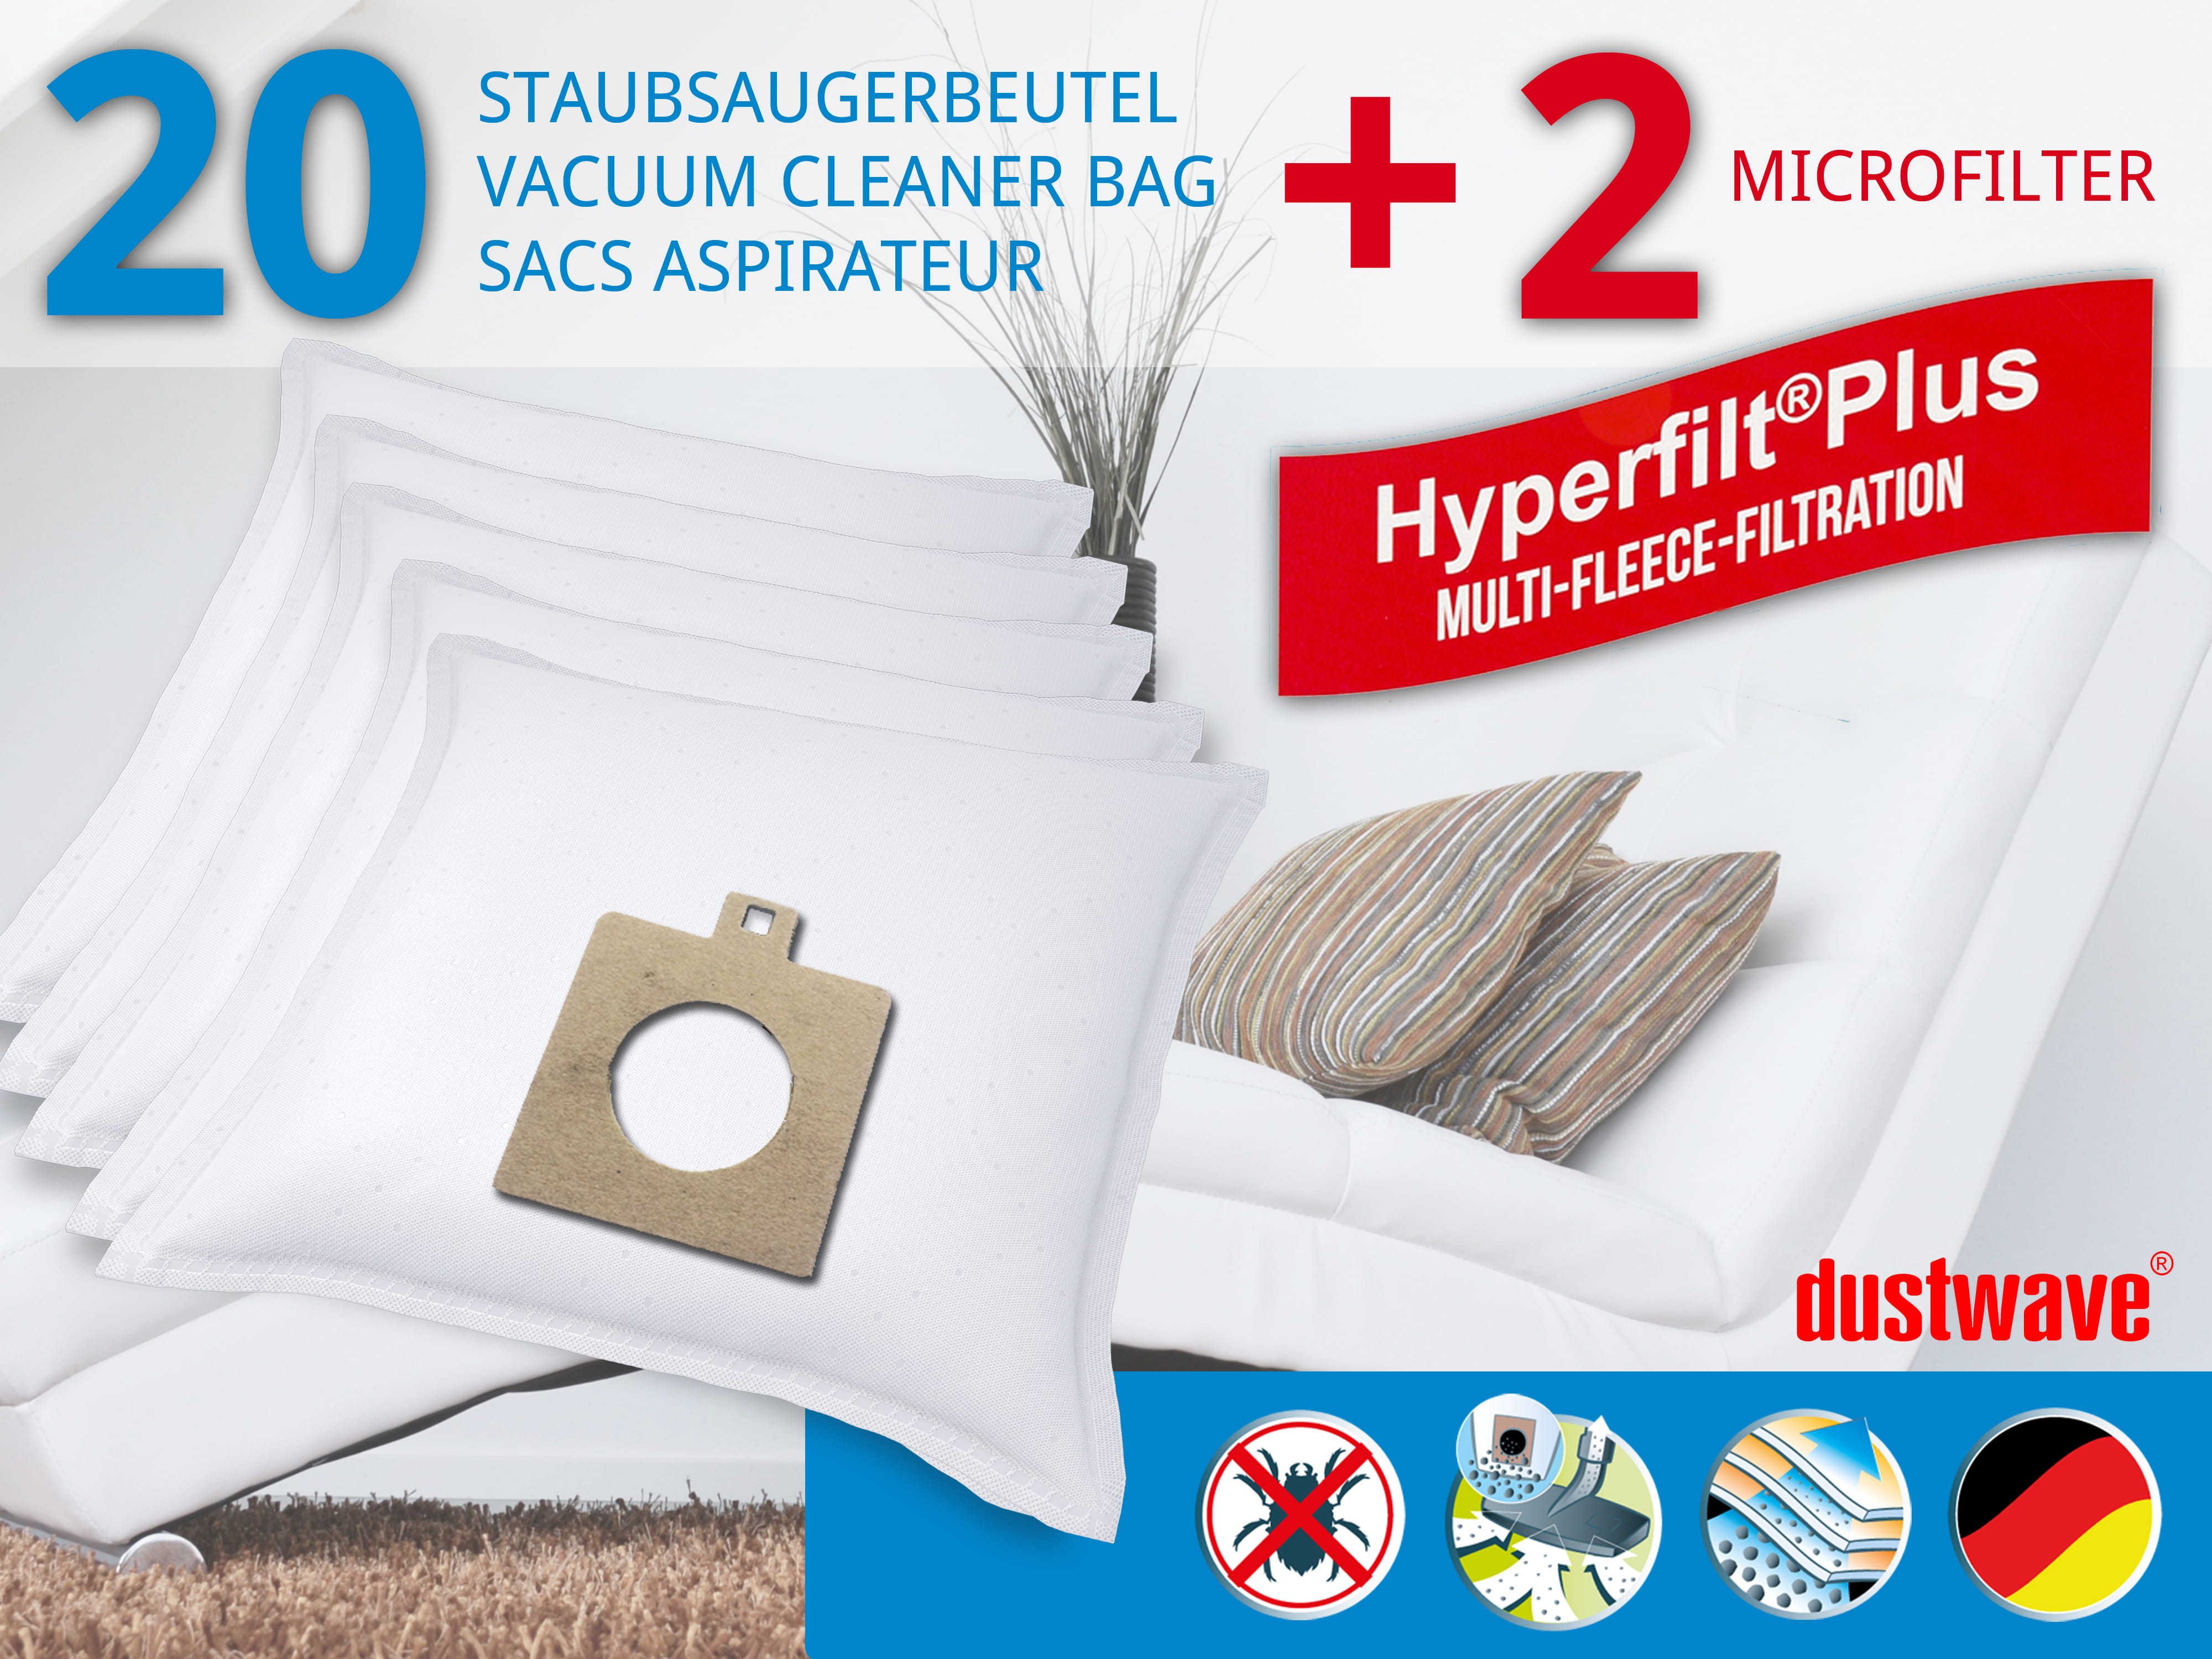 Dustwave® 20 Staubsaugerbeutel für AEG Smart 487 - hocheffizient mit Hygieneverschluss - Made in Germany